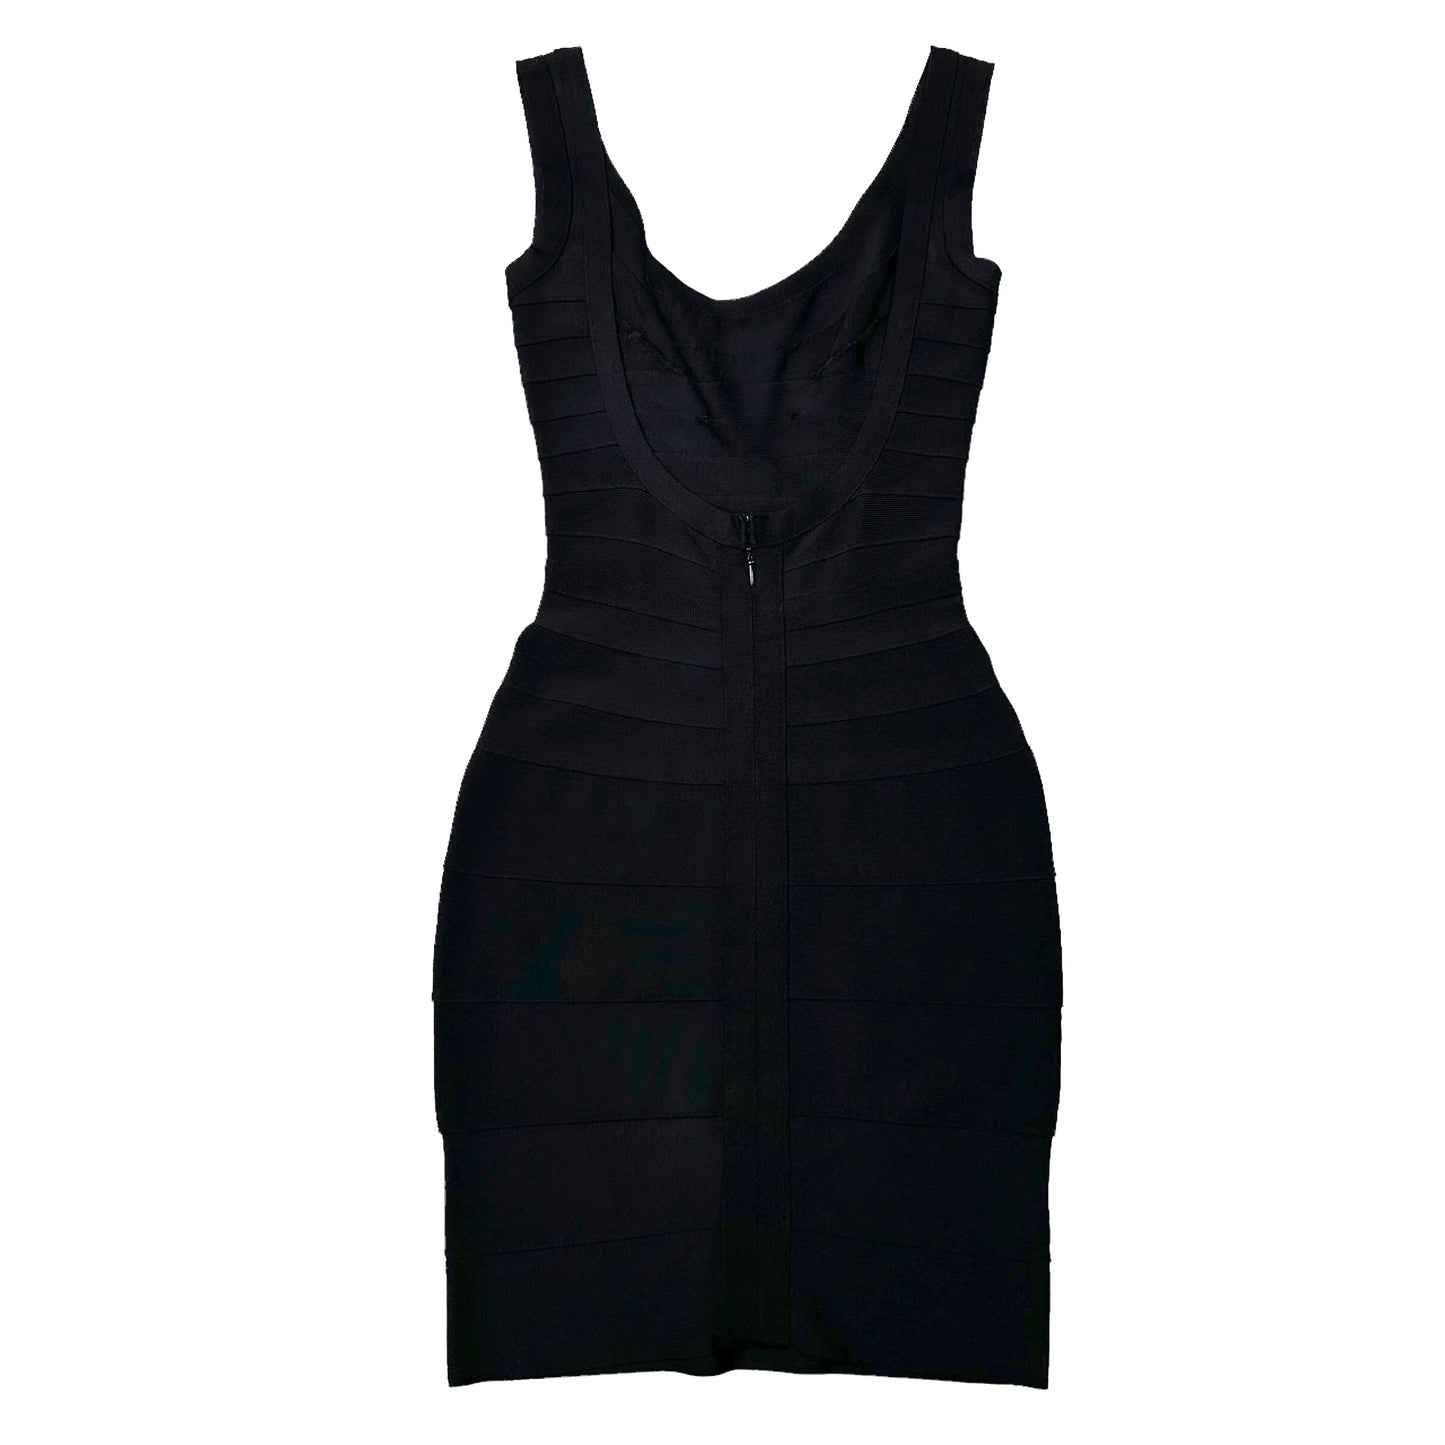 Black Iconic Bandage Dress - M